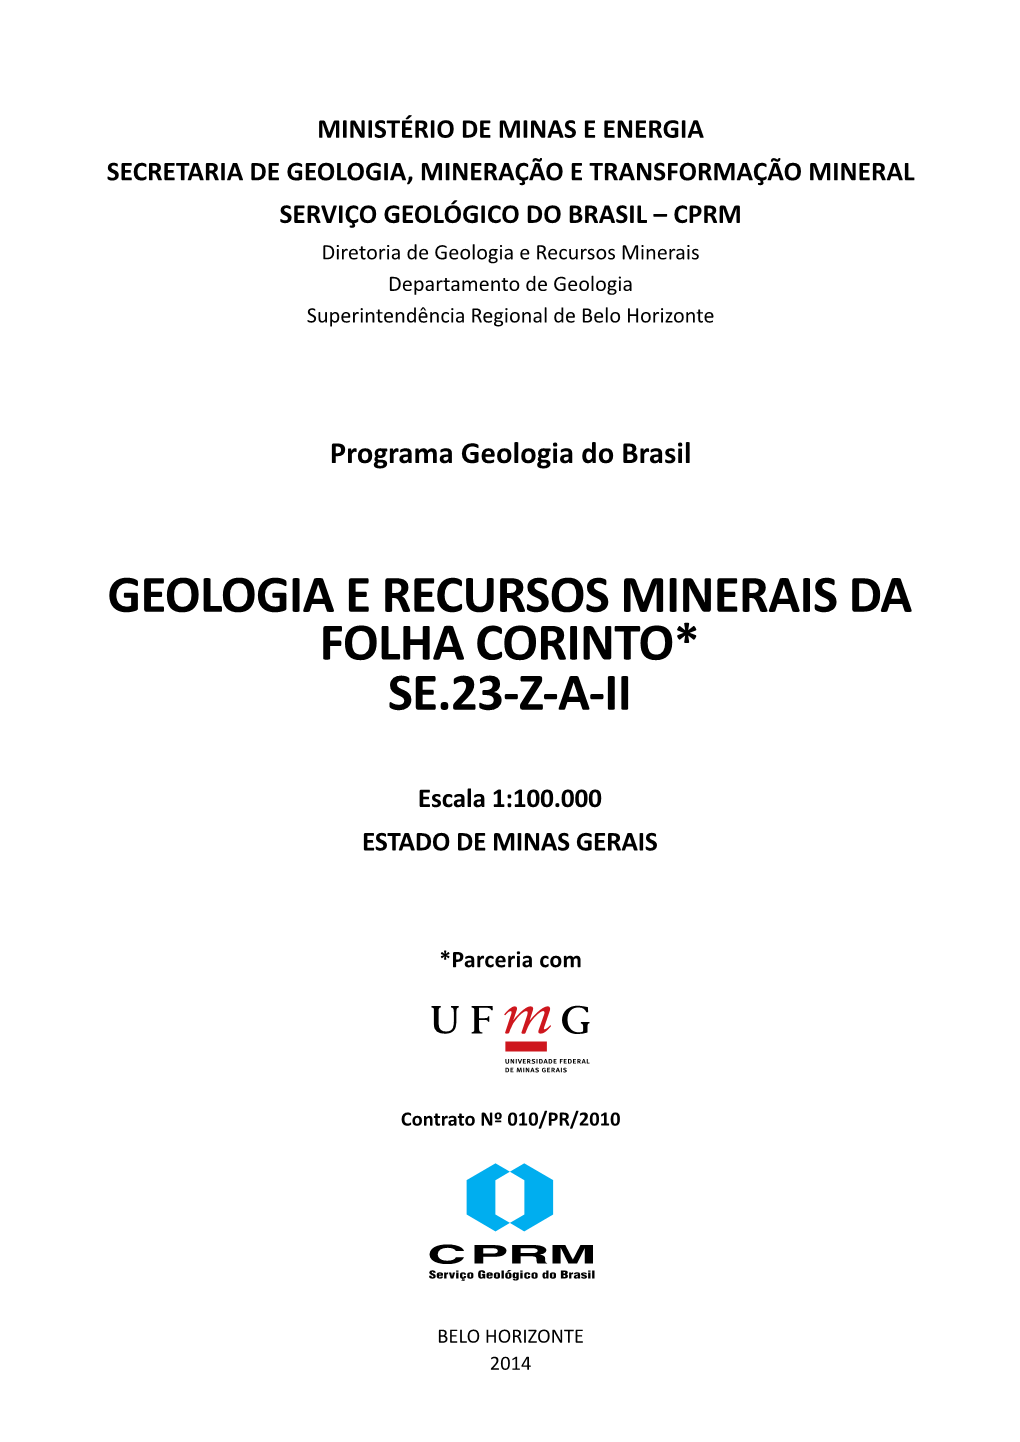 Geologia E Recursos Minerais Da Folha Corinto* Se.23-Z-A-Ii